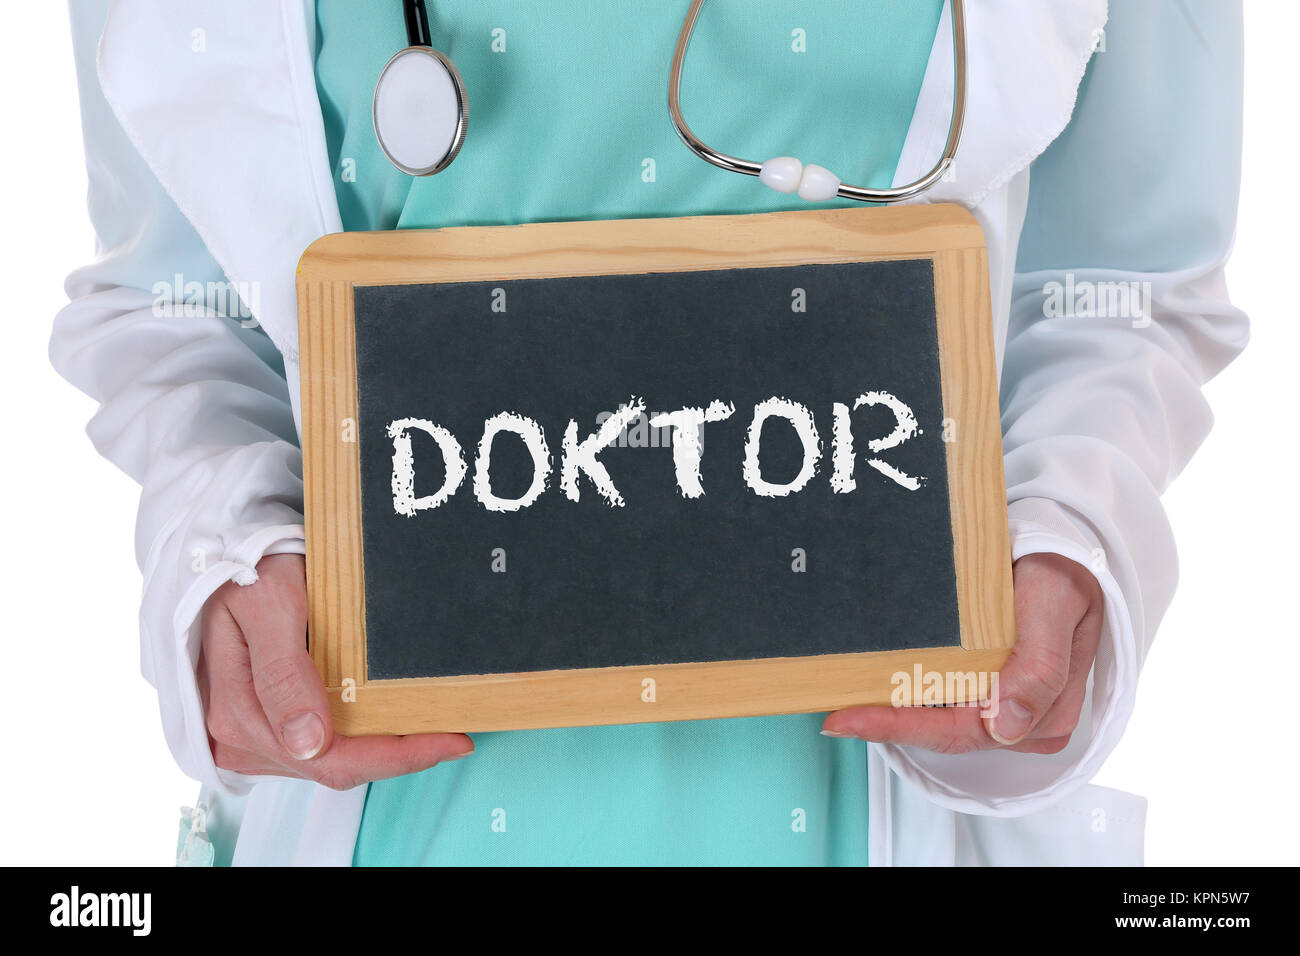 Arzt Arzt Arzt Gesundheit healthcare krank Krankheit Stockfoto